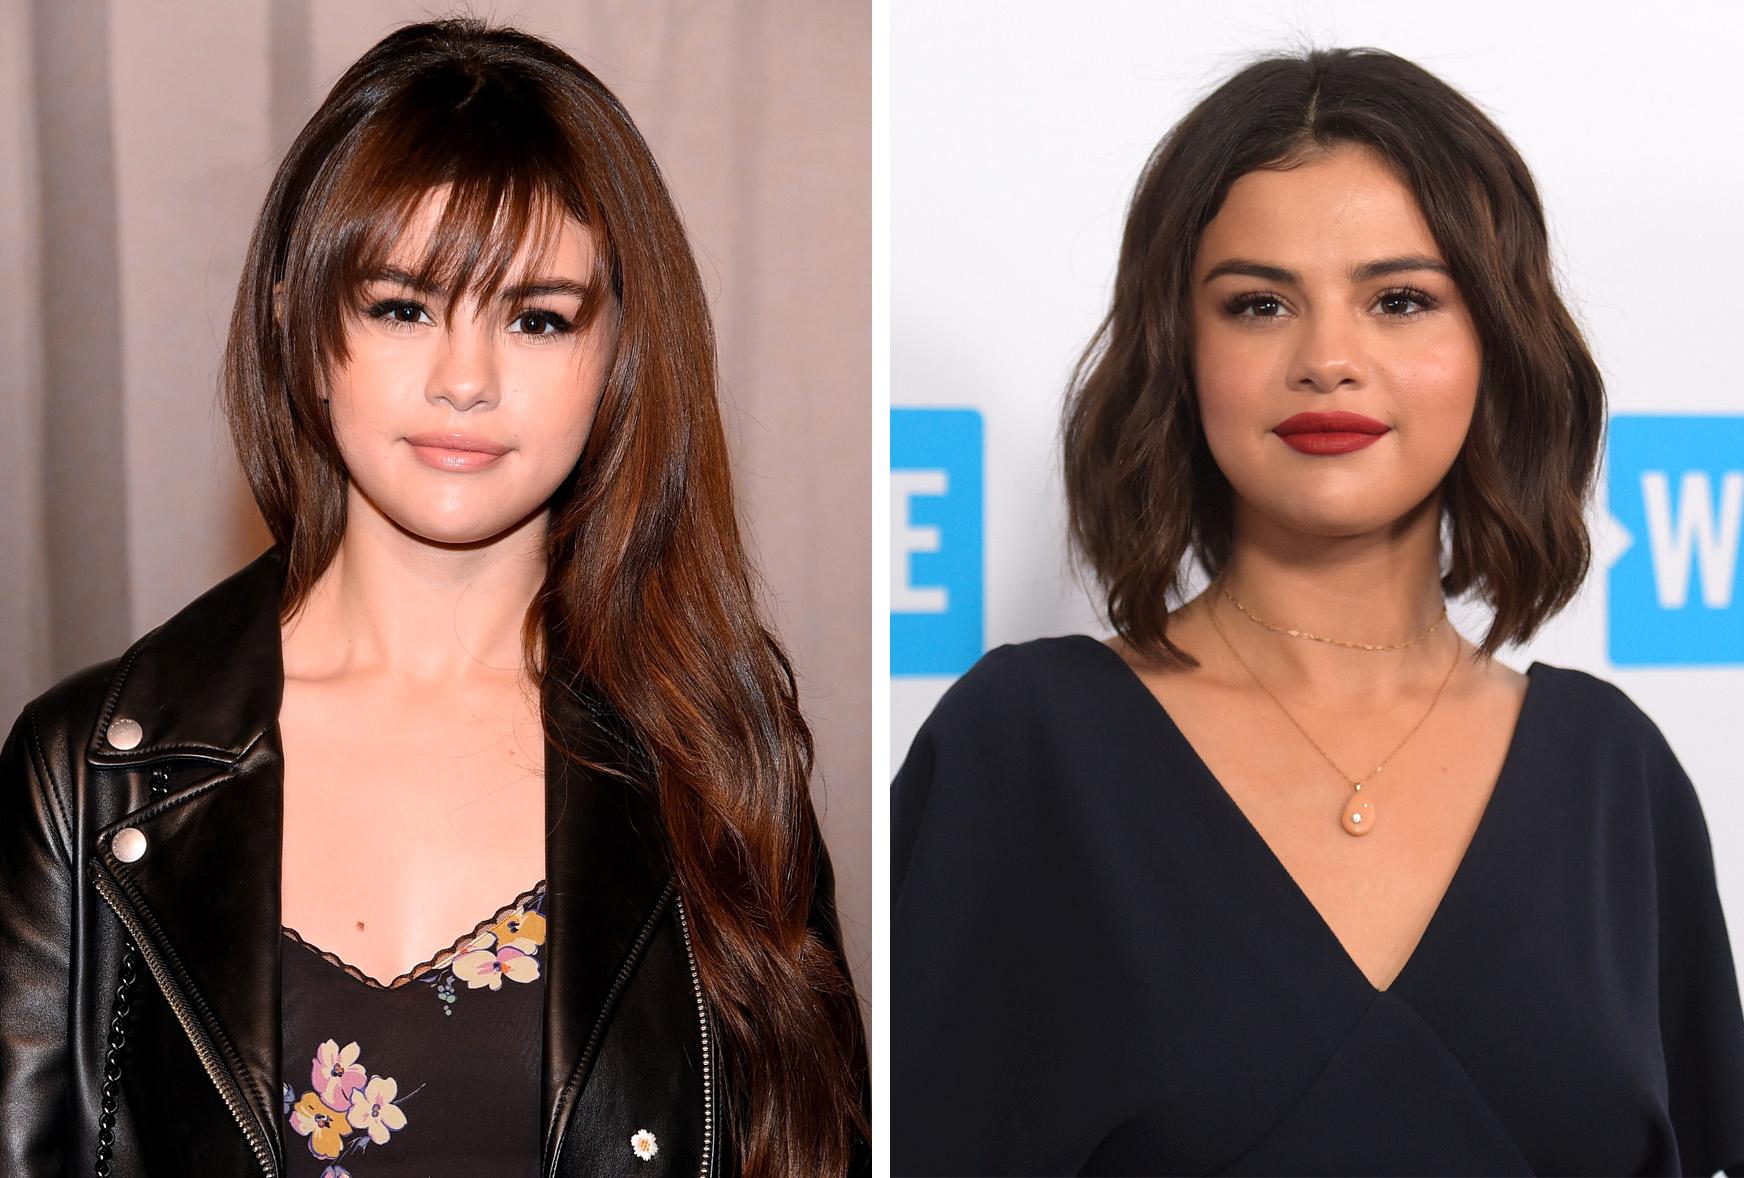 BERØMT BRUDD: Nyheten om at Selena Gomez og Justin Bieber hadde gått fra hverandre var oppslag på nettsider, aviser og magasiner over hele verden i 2018. Det ble selvfølgelig også overskrifter da Selena Gomez valgte å klippe sine lange lokker etter bruddet.